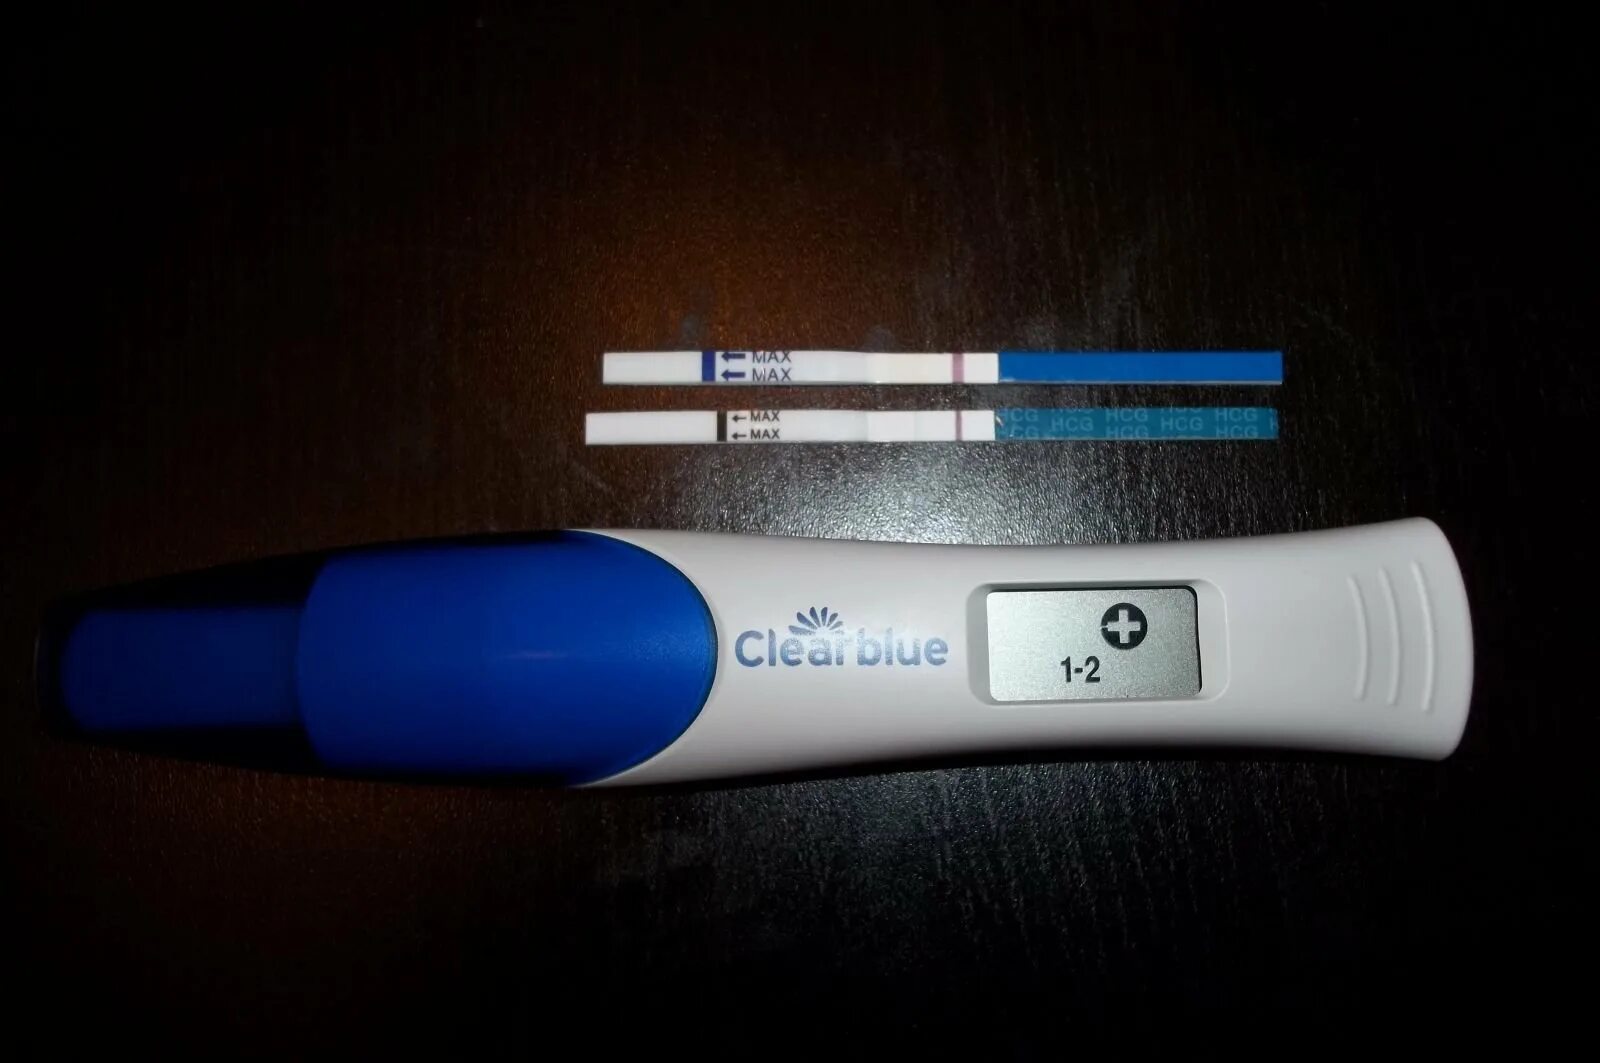 На какой неделе беременности тест показывает результат. Тест на беременность на 2 день задержки показывает беременность. Тест на беременность 1 и на 2 день задержки. Электронный тест на беременность на ранних сроках. Тест на беременность цифровой Clearblue до задержки результат.